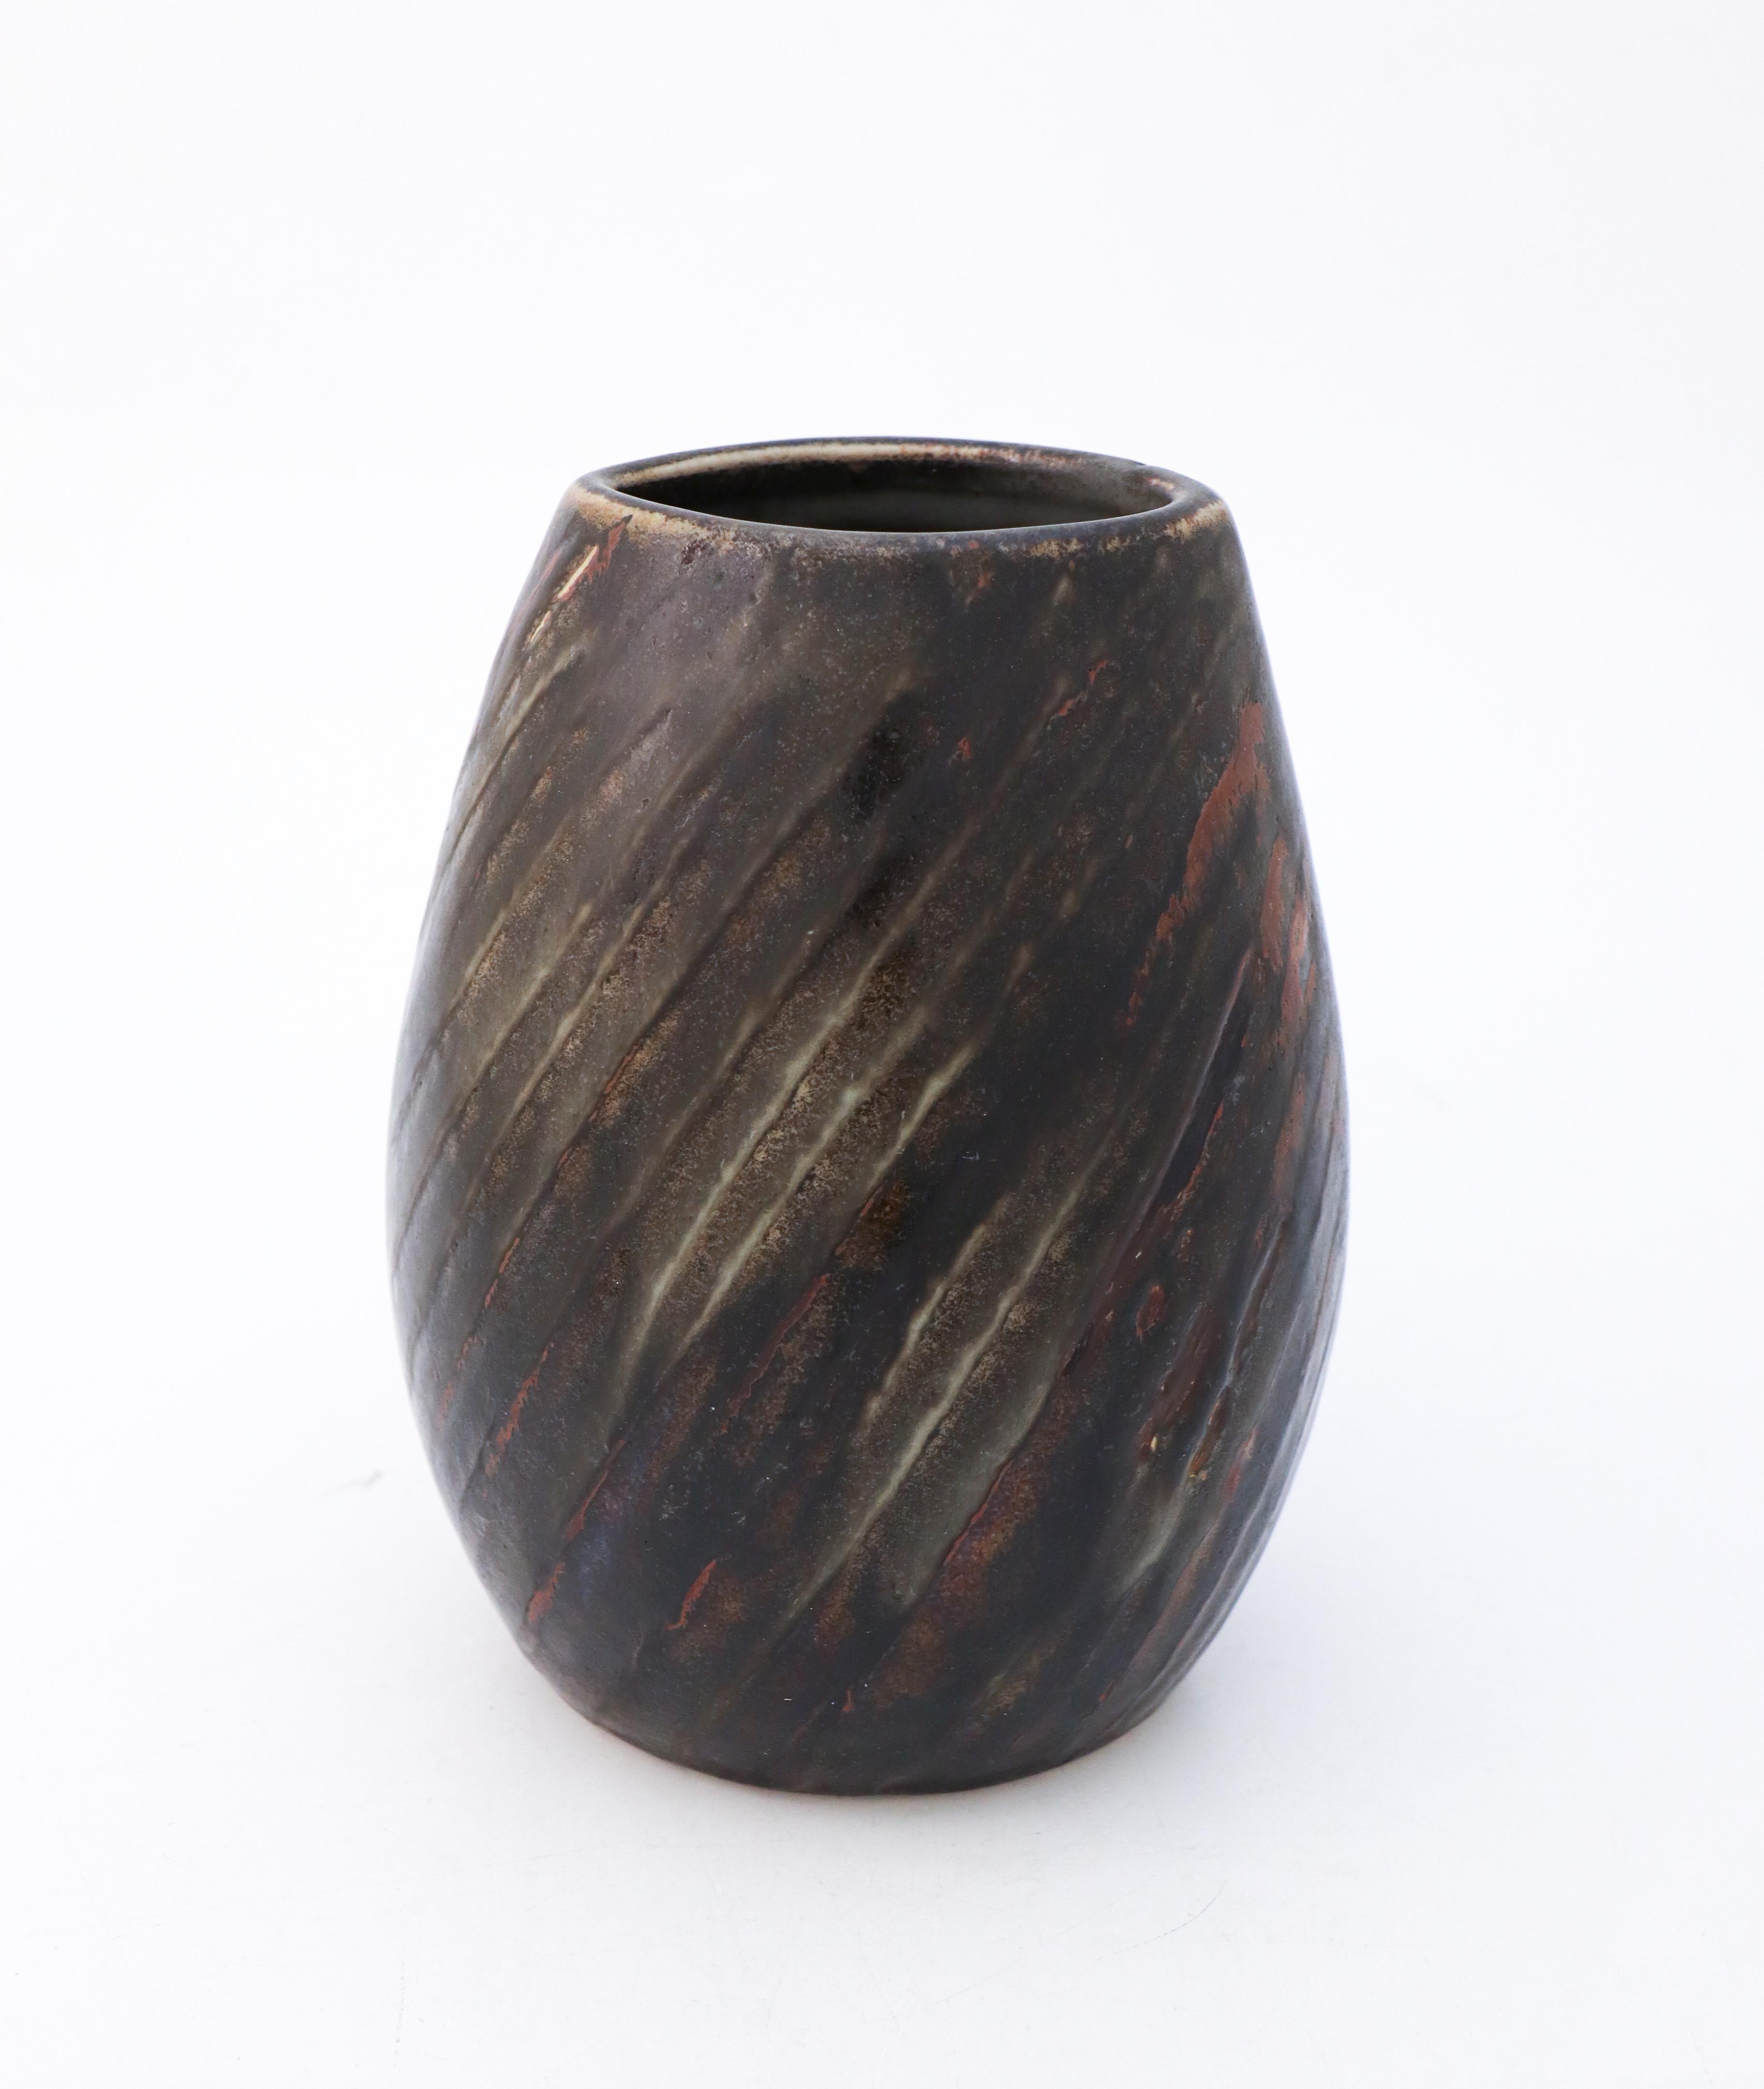 Vase noir et brun conçu par Carl-Harry Stålhane à l'atelier Rörstrand. Il mesure 21 cm de haut et environ 14,5 x 12 cm de diamètre. Elle est en excellent état. Il est indiqué qu'il s'agit d'un produit de deuxième qualité, mais je ne vois pas